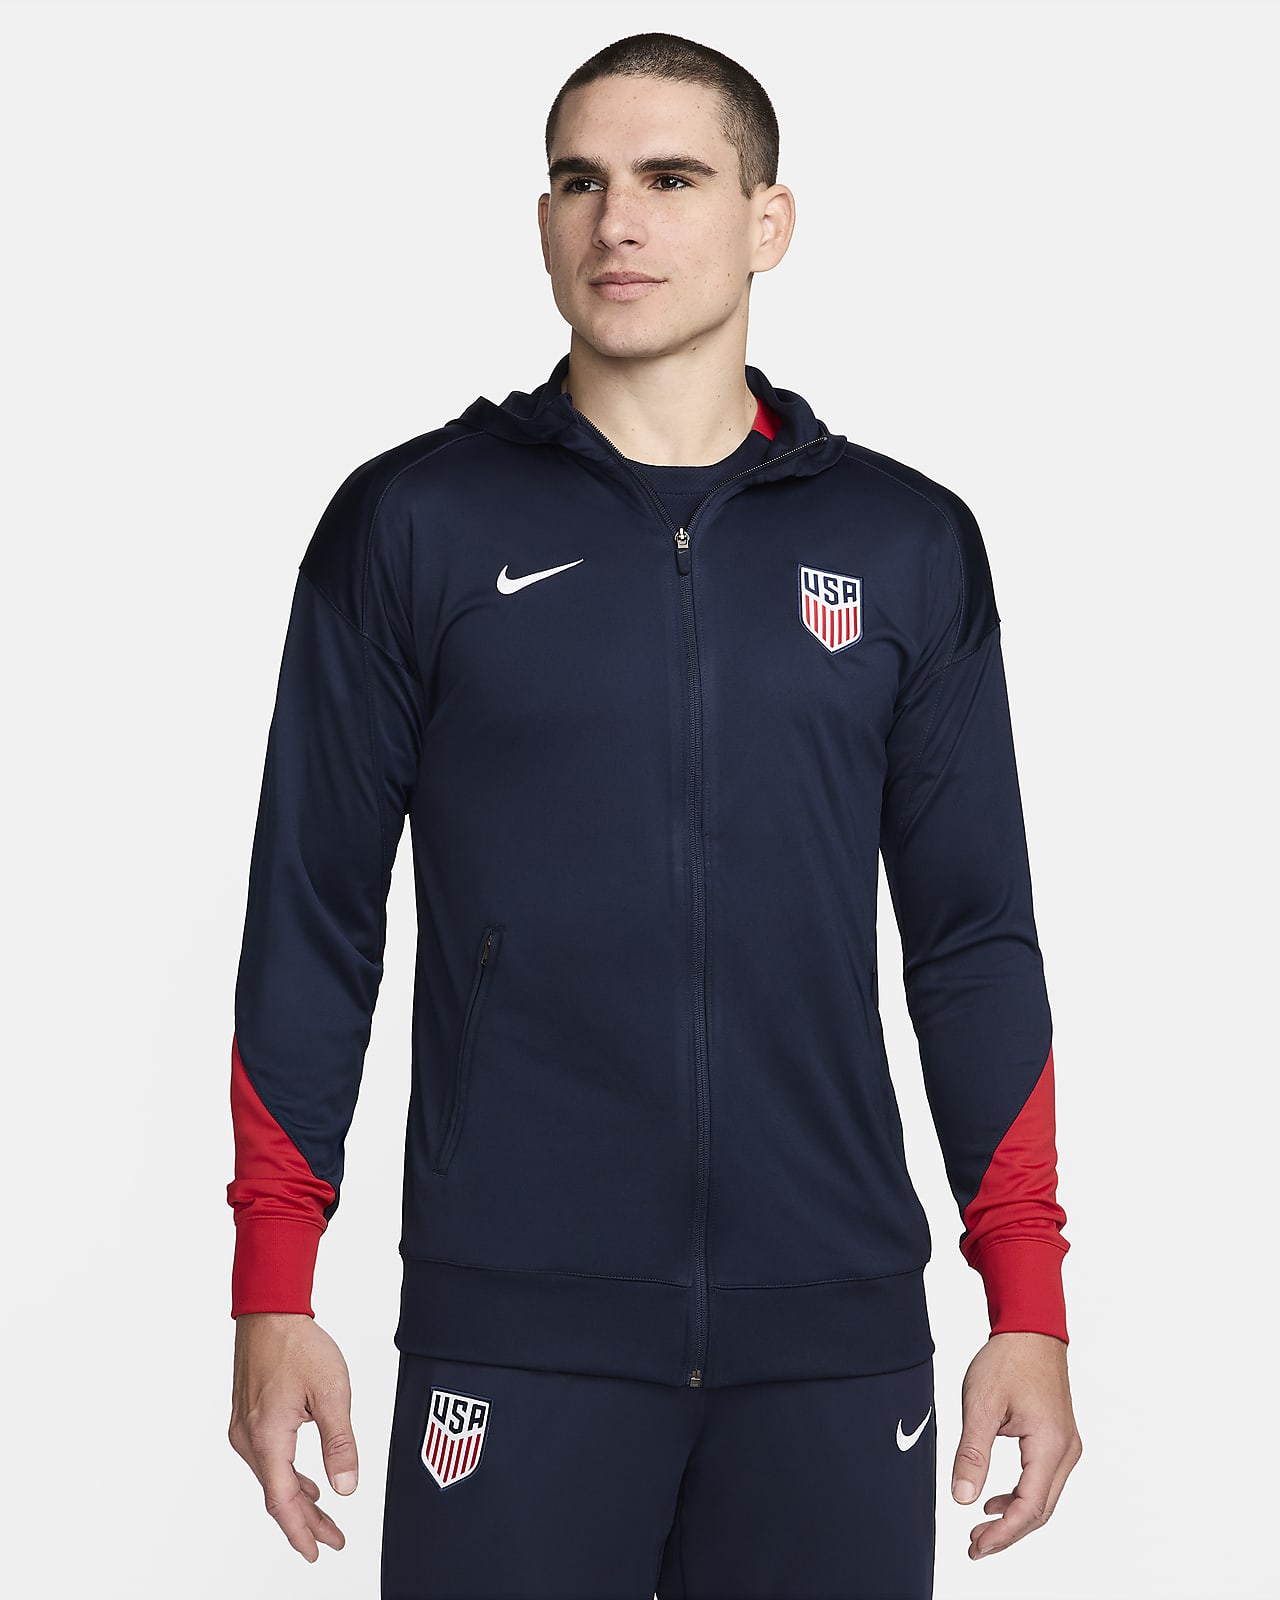 USMNT Strike Men's Nike Dri-FIT Soccer Hooded Track Jacket